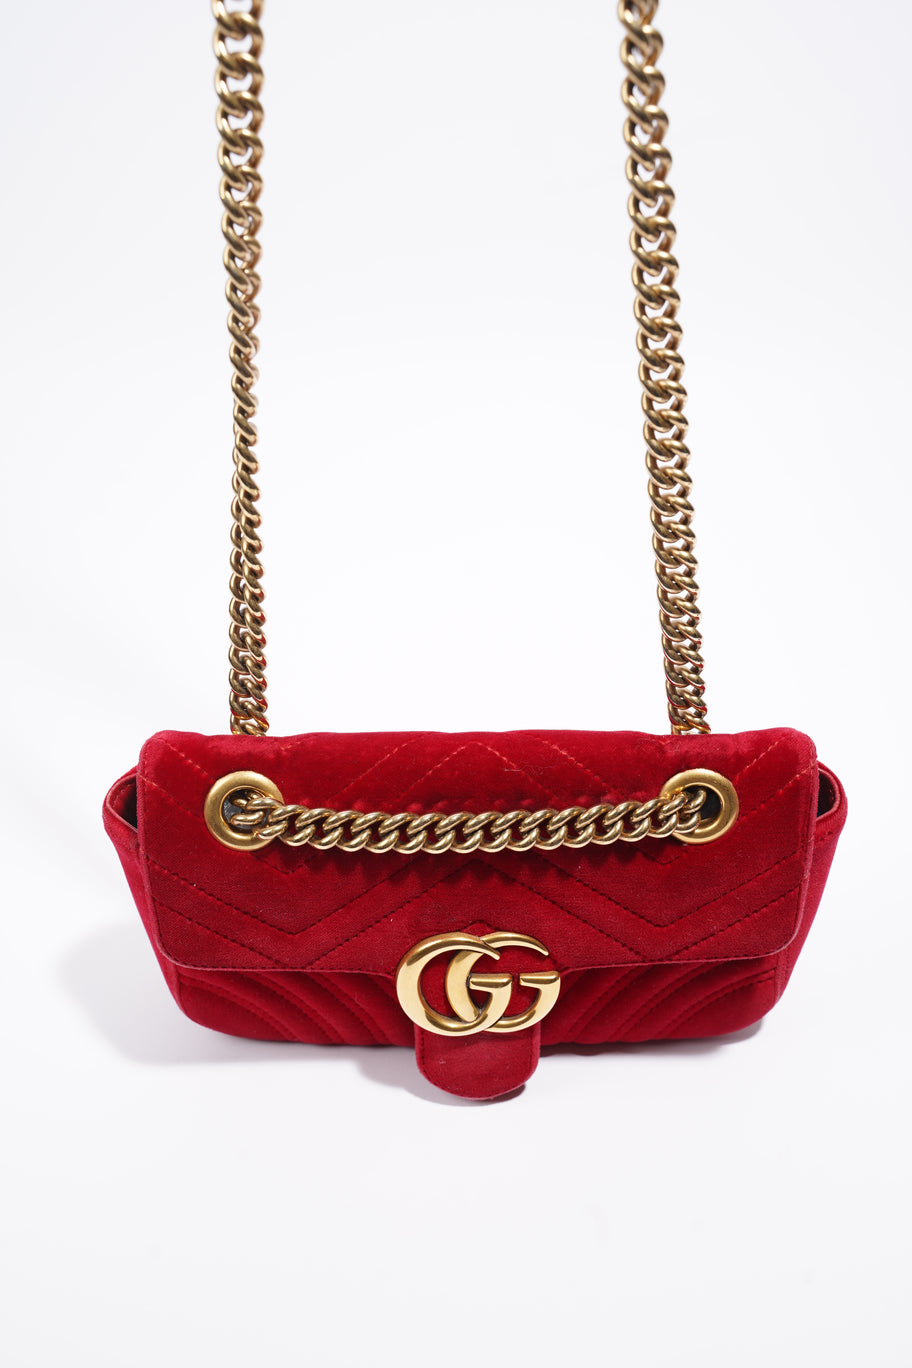 GG Marmont Bag Red Velvet Mini Image 7